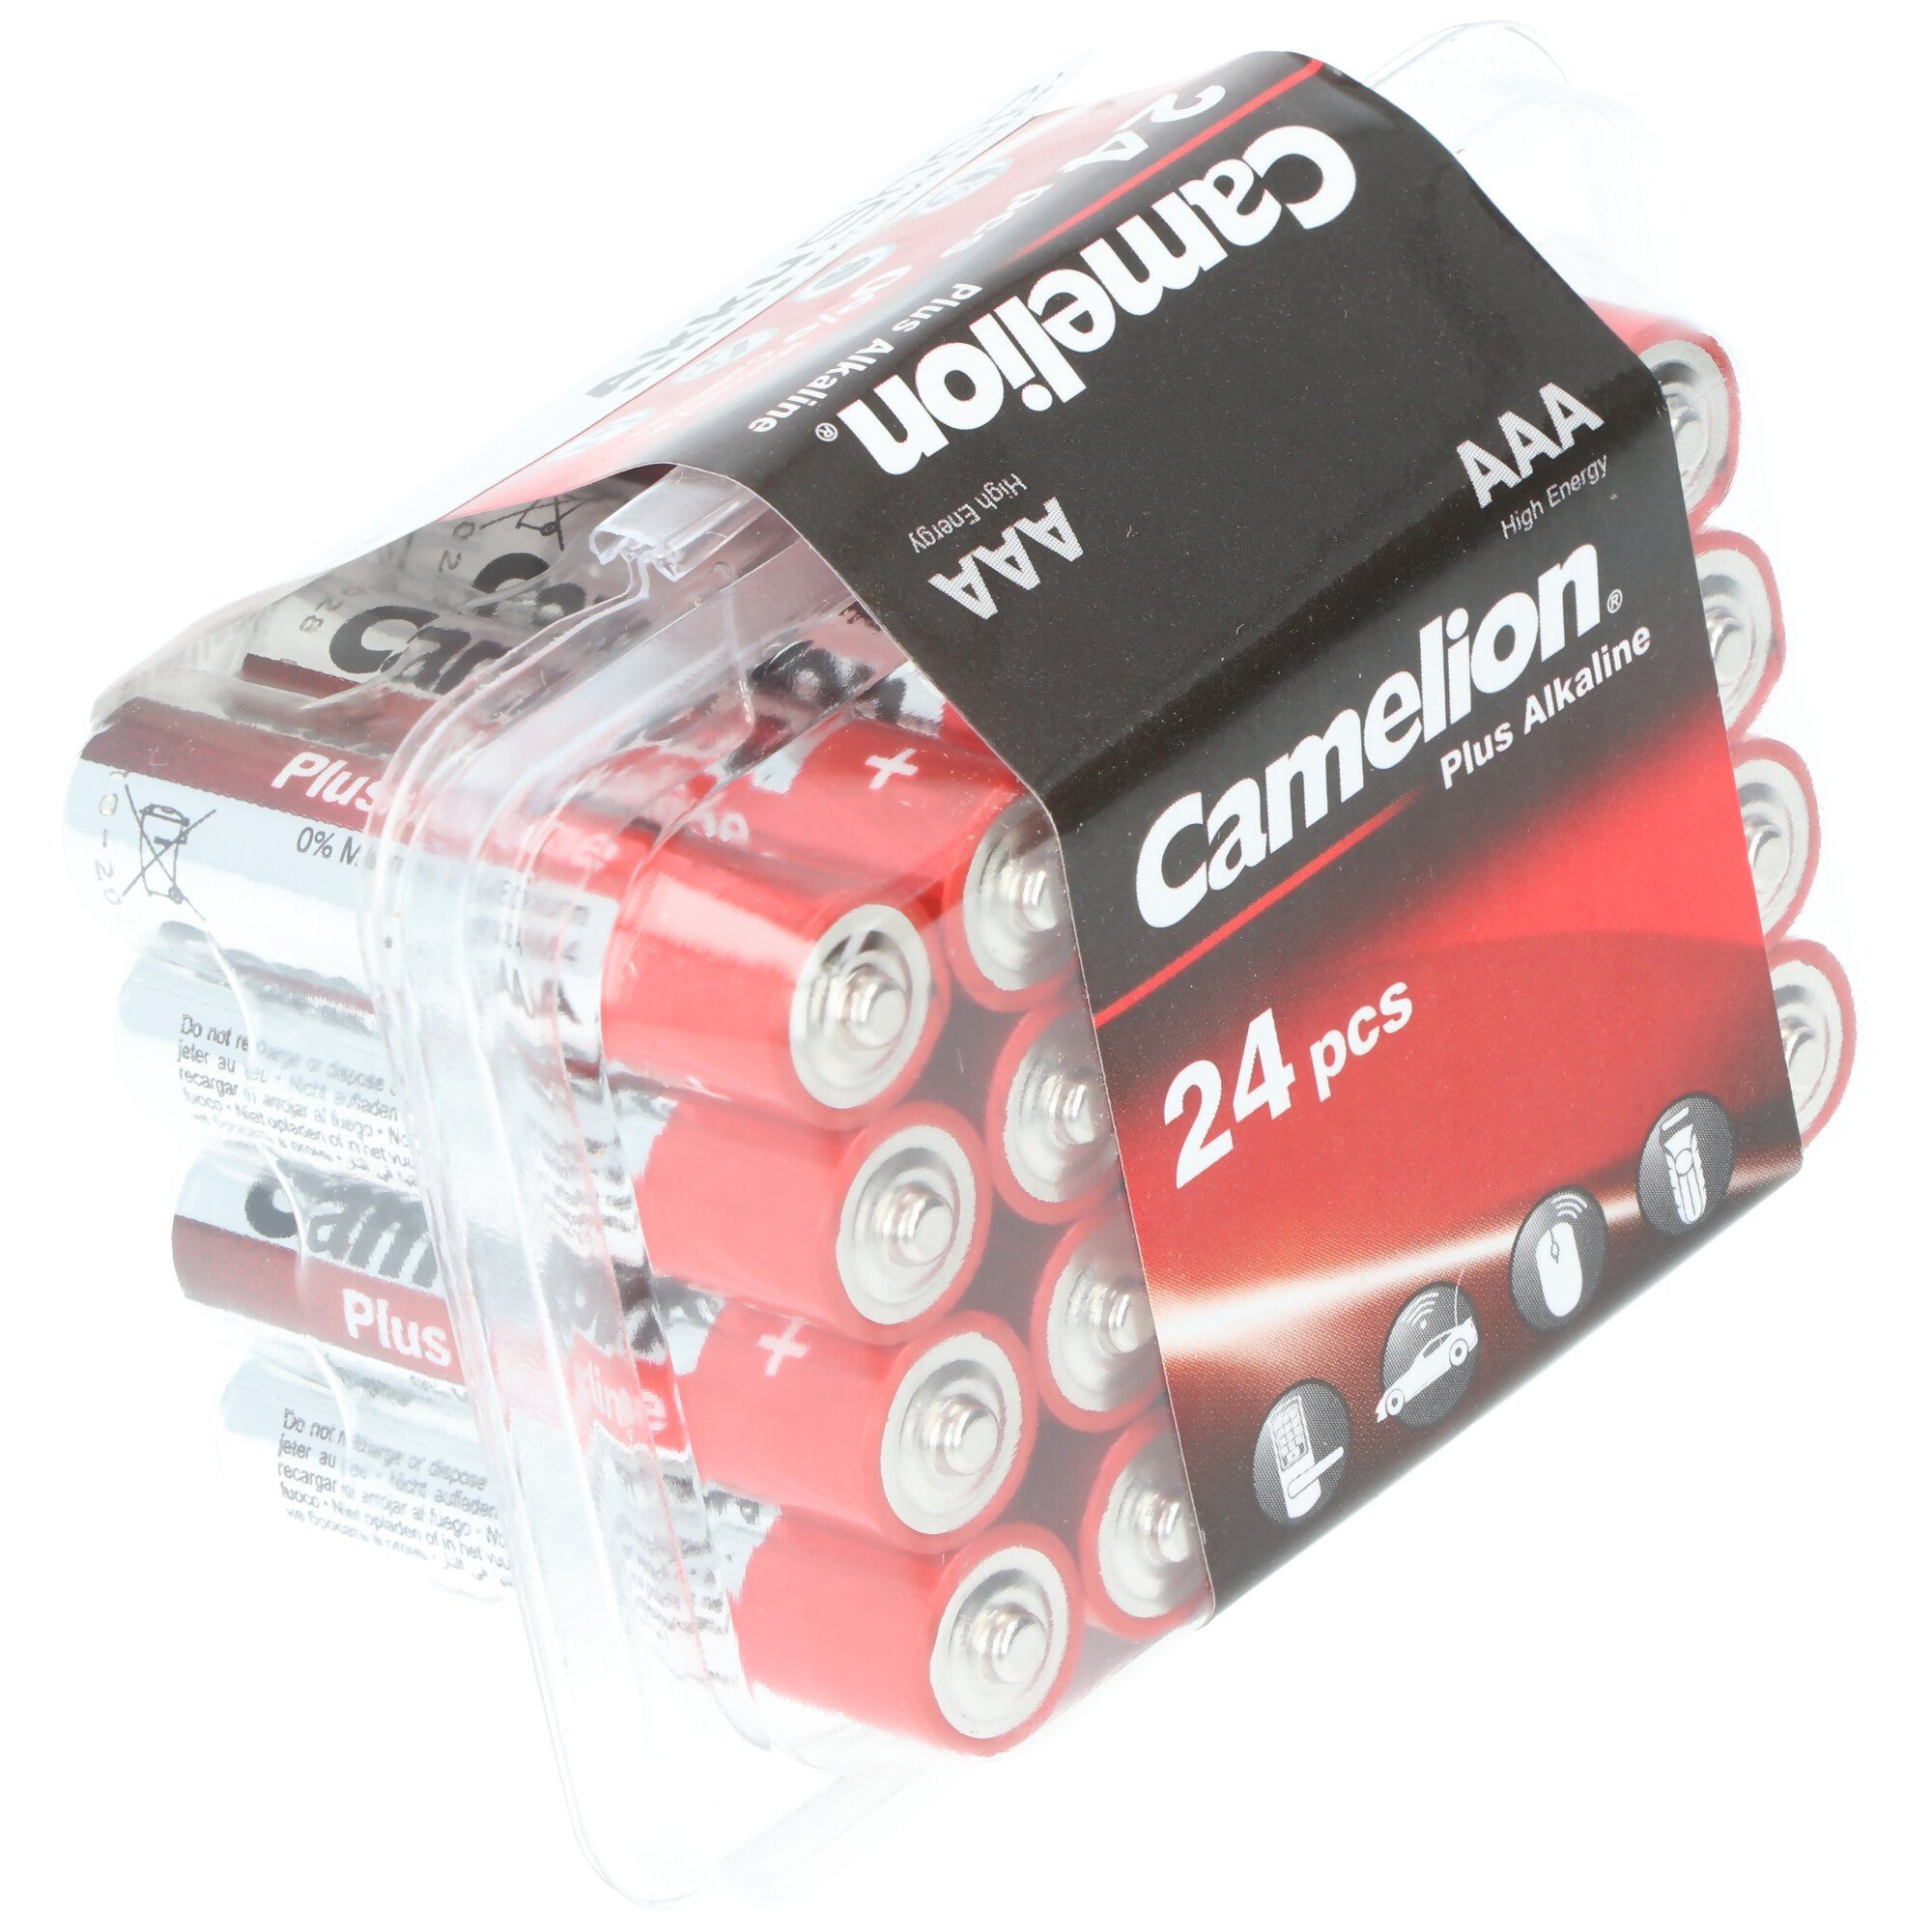 Aufbewa AAA Stück Batterien, (1,5 praktischer V) Alkaline Batterie, Camelion Camelion in 24 Plus